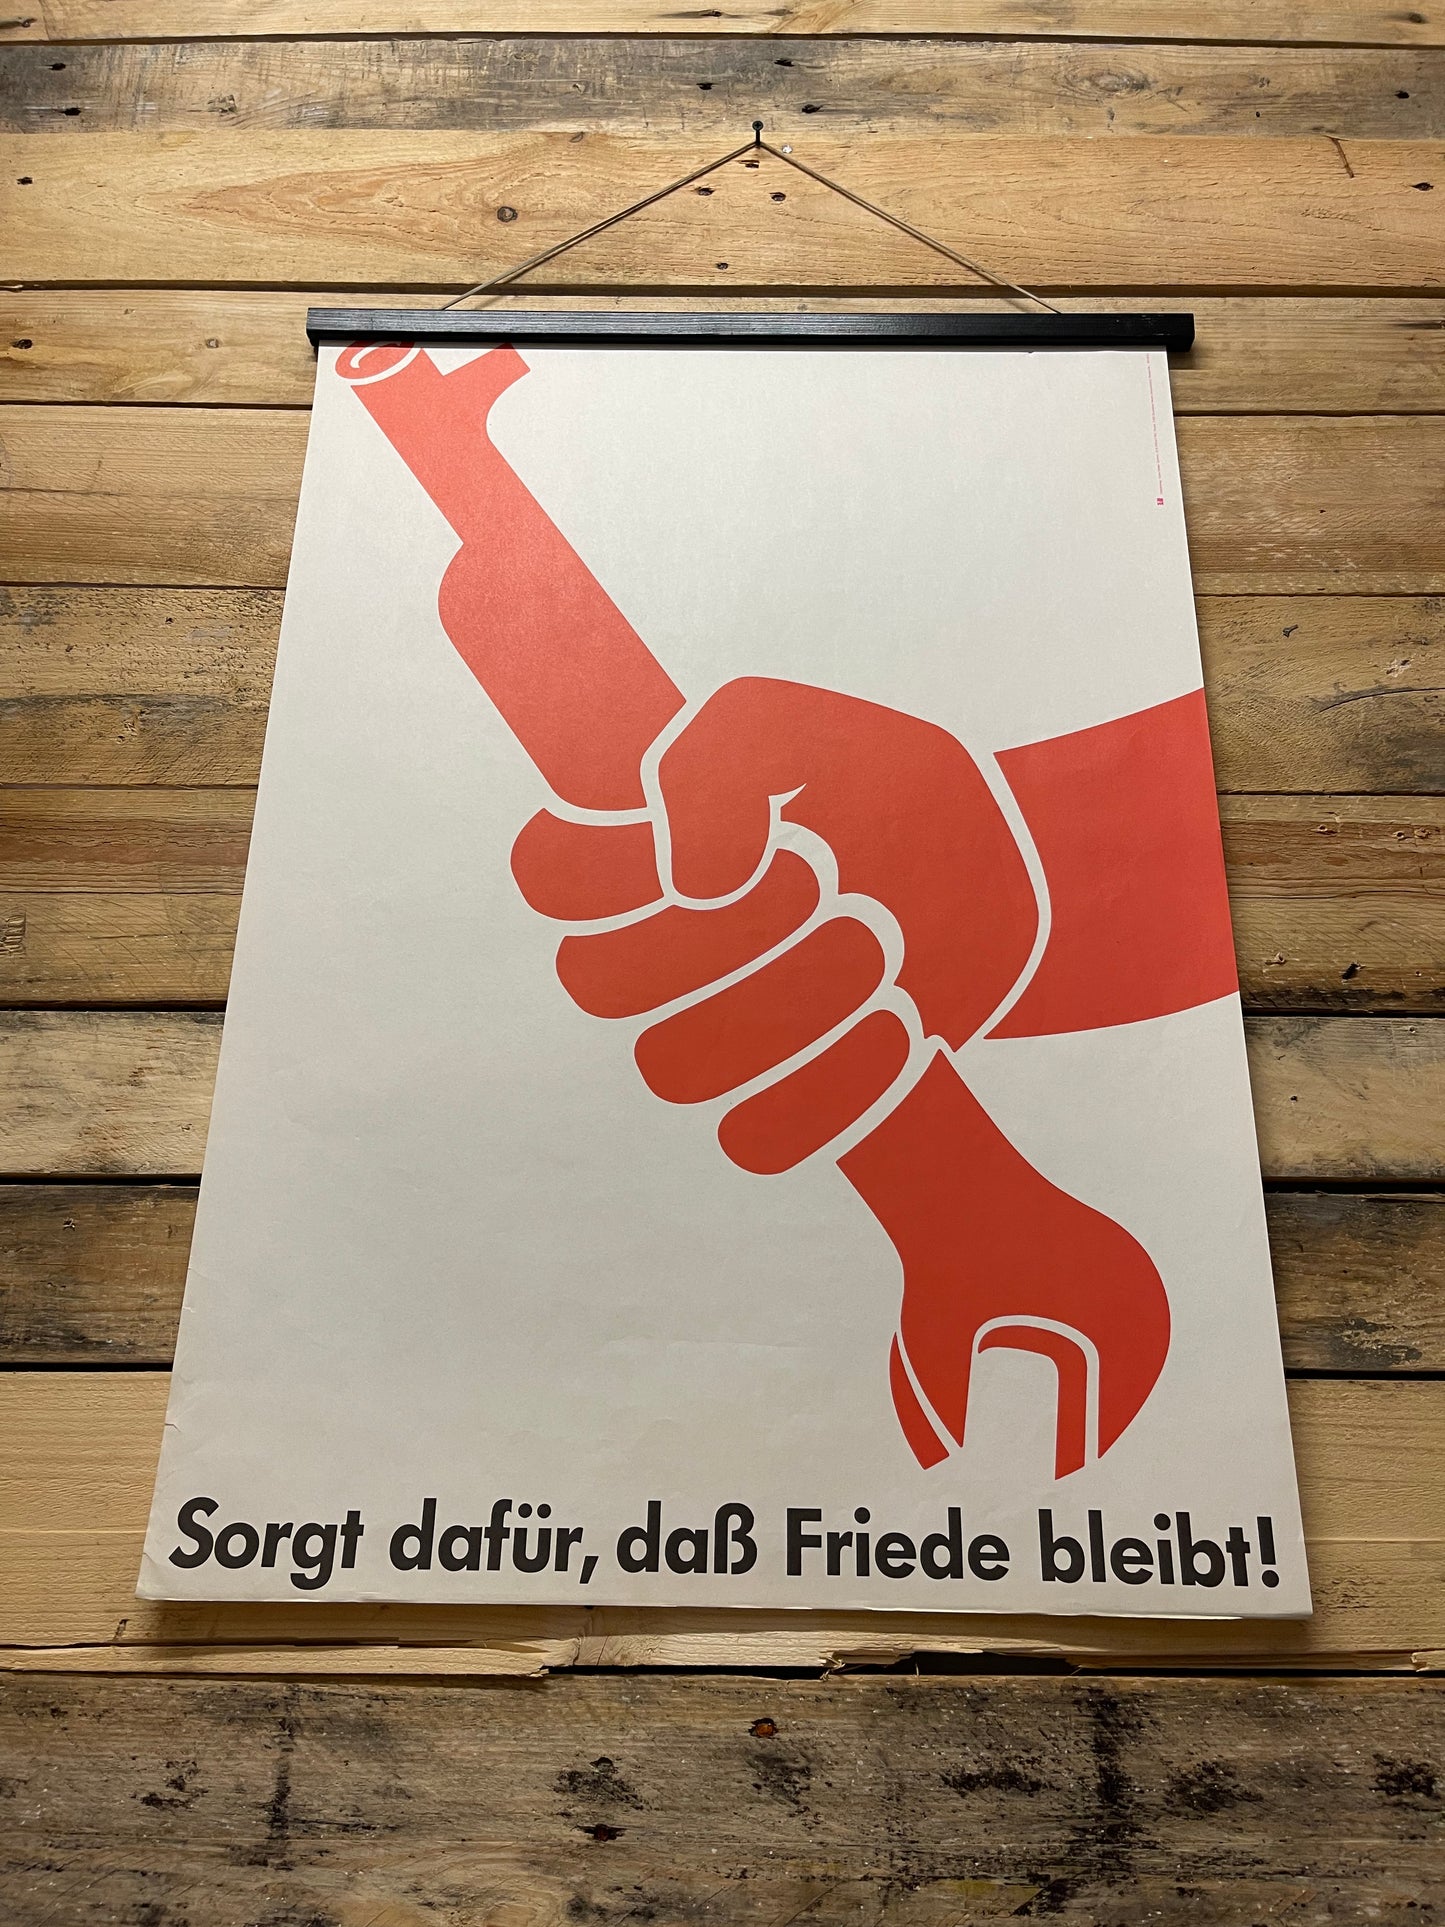 Ultra Rare 1982 DDR Propaganda Poster By Hans-Dieter Gumm